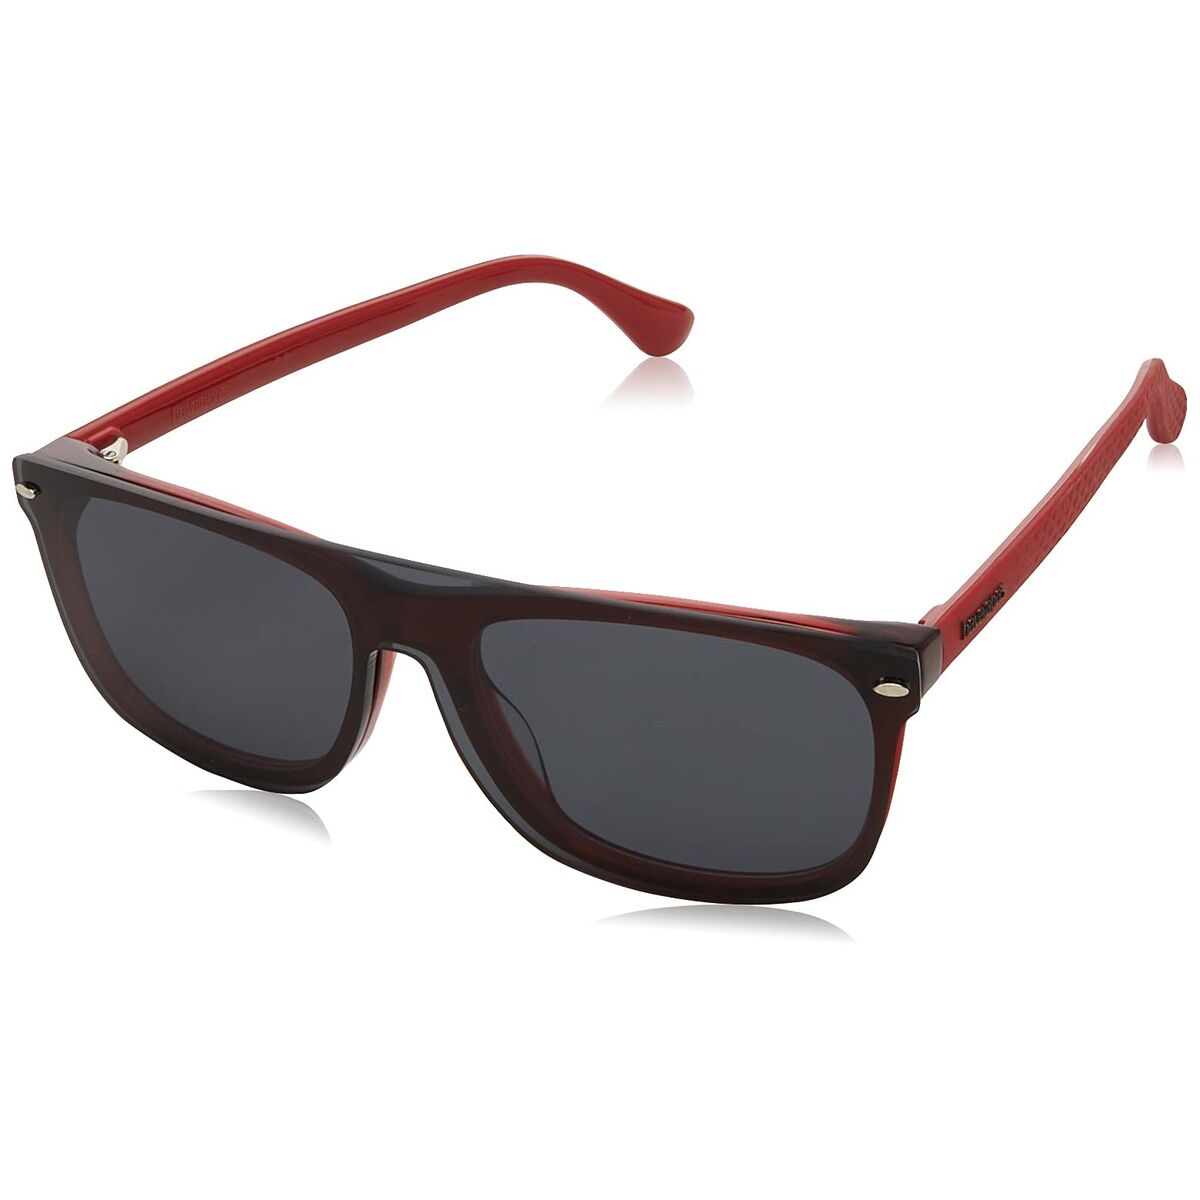 Men's Sunglasses Havaianas PARATY/CS Red ø 54 mm